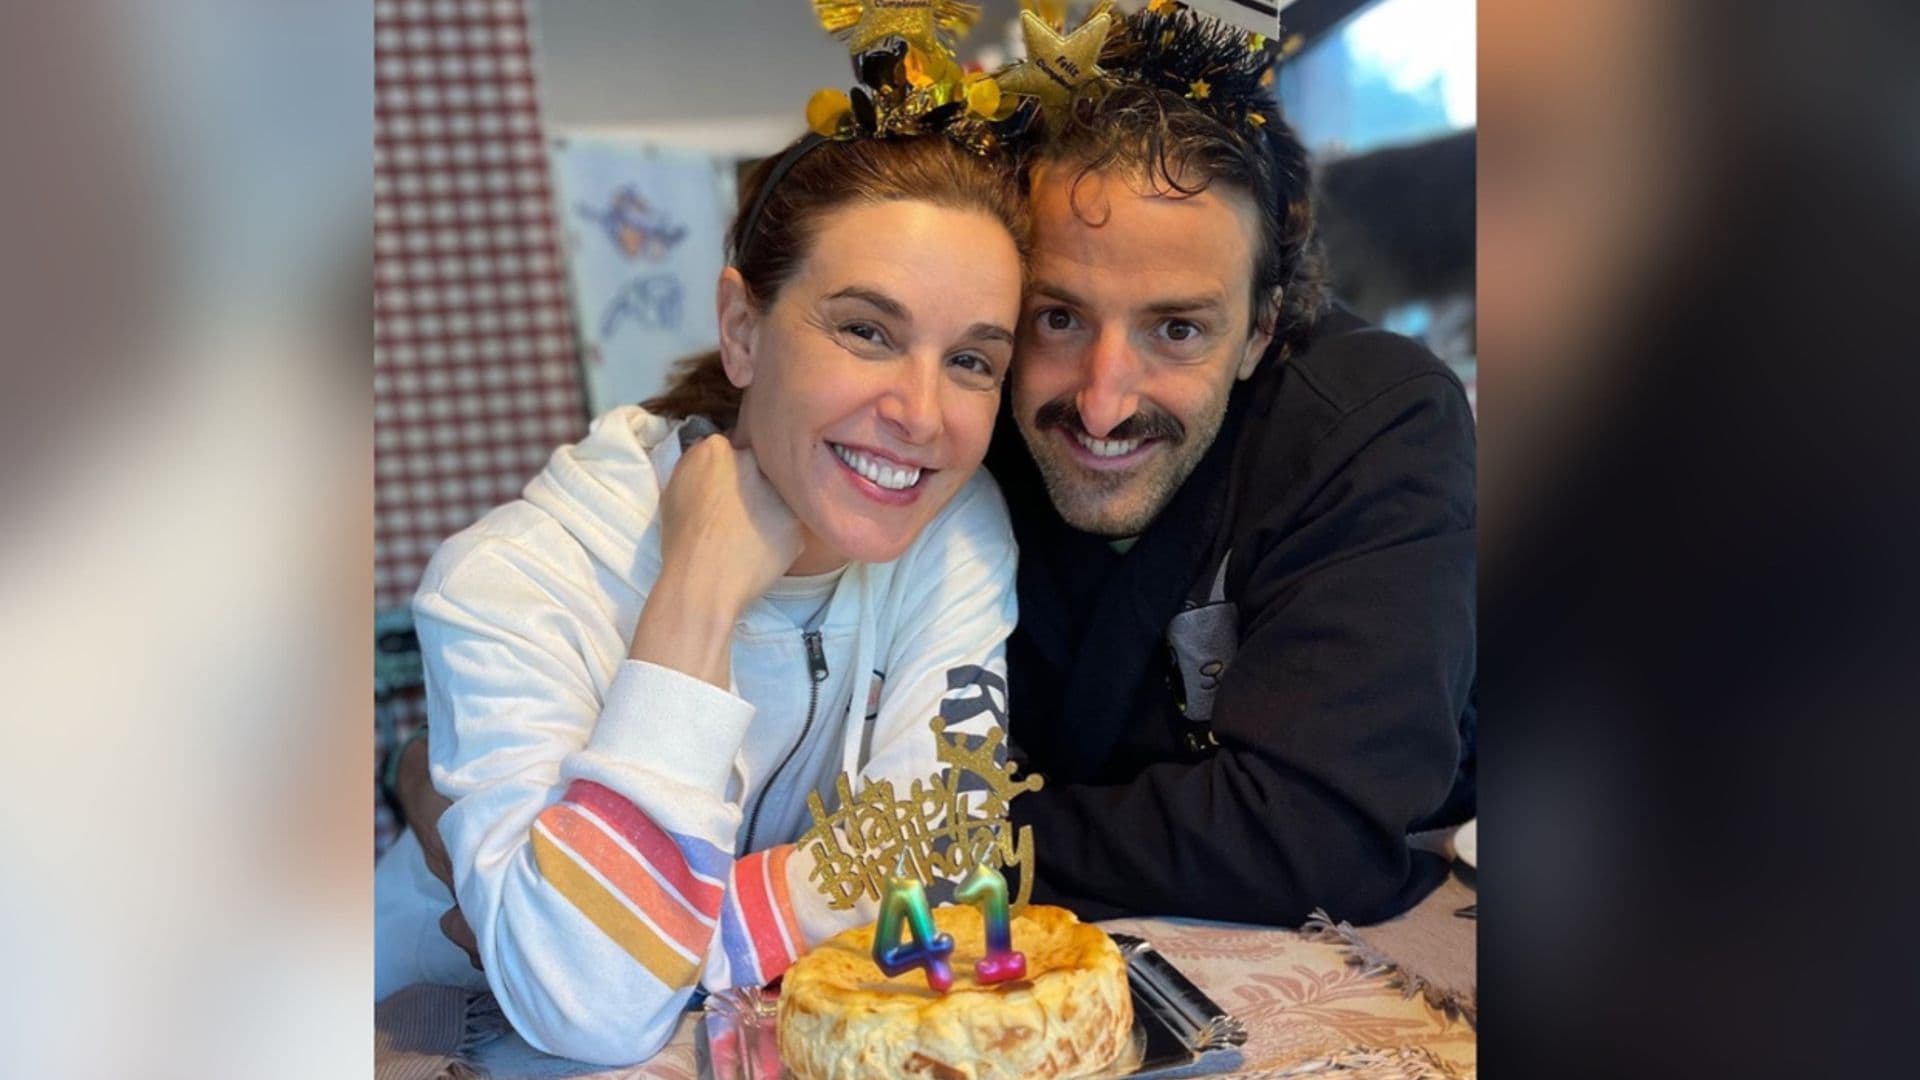 Raquel Sánchez Silva felicita a su chico por su cumpleaños sin ocultar su amor por él